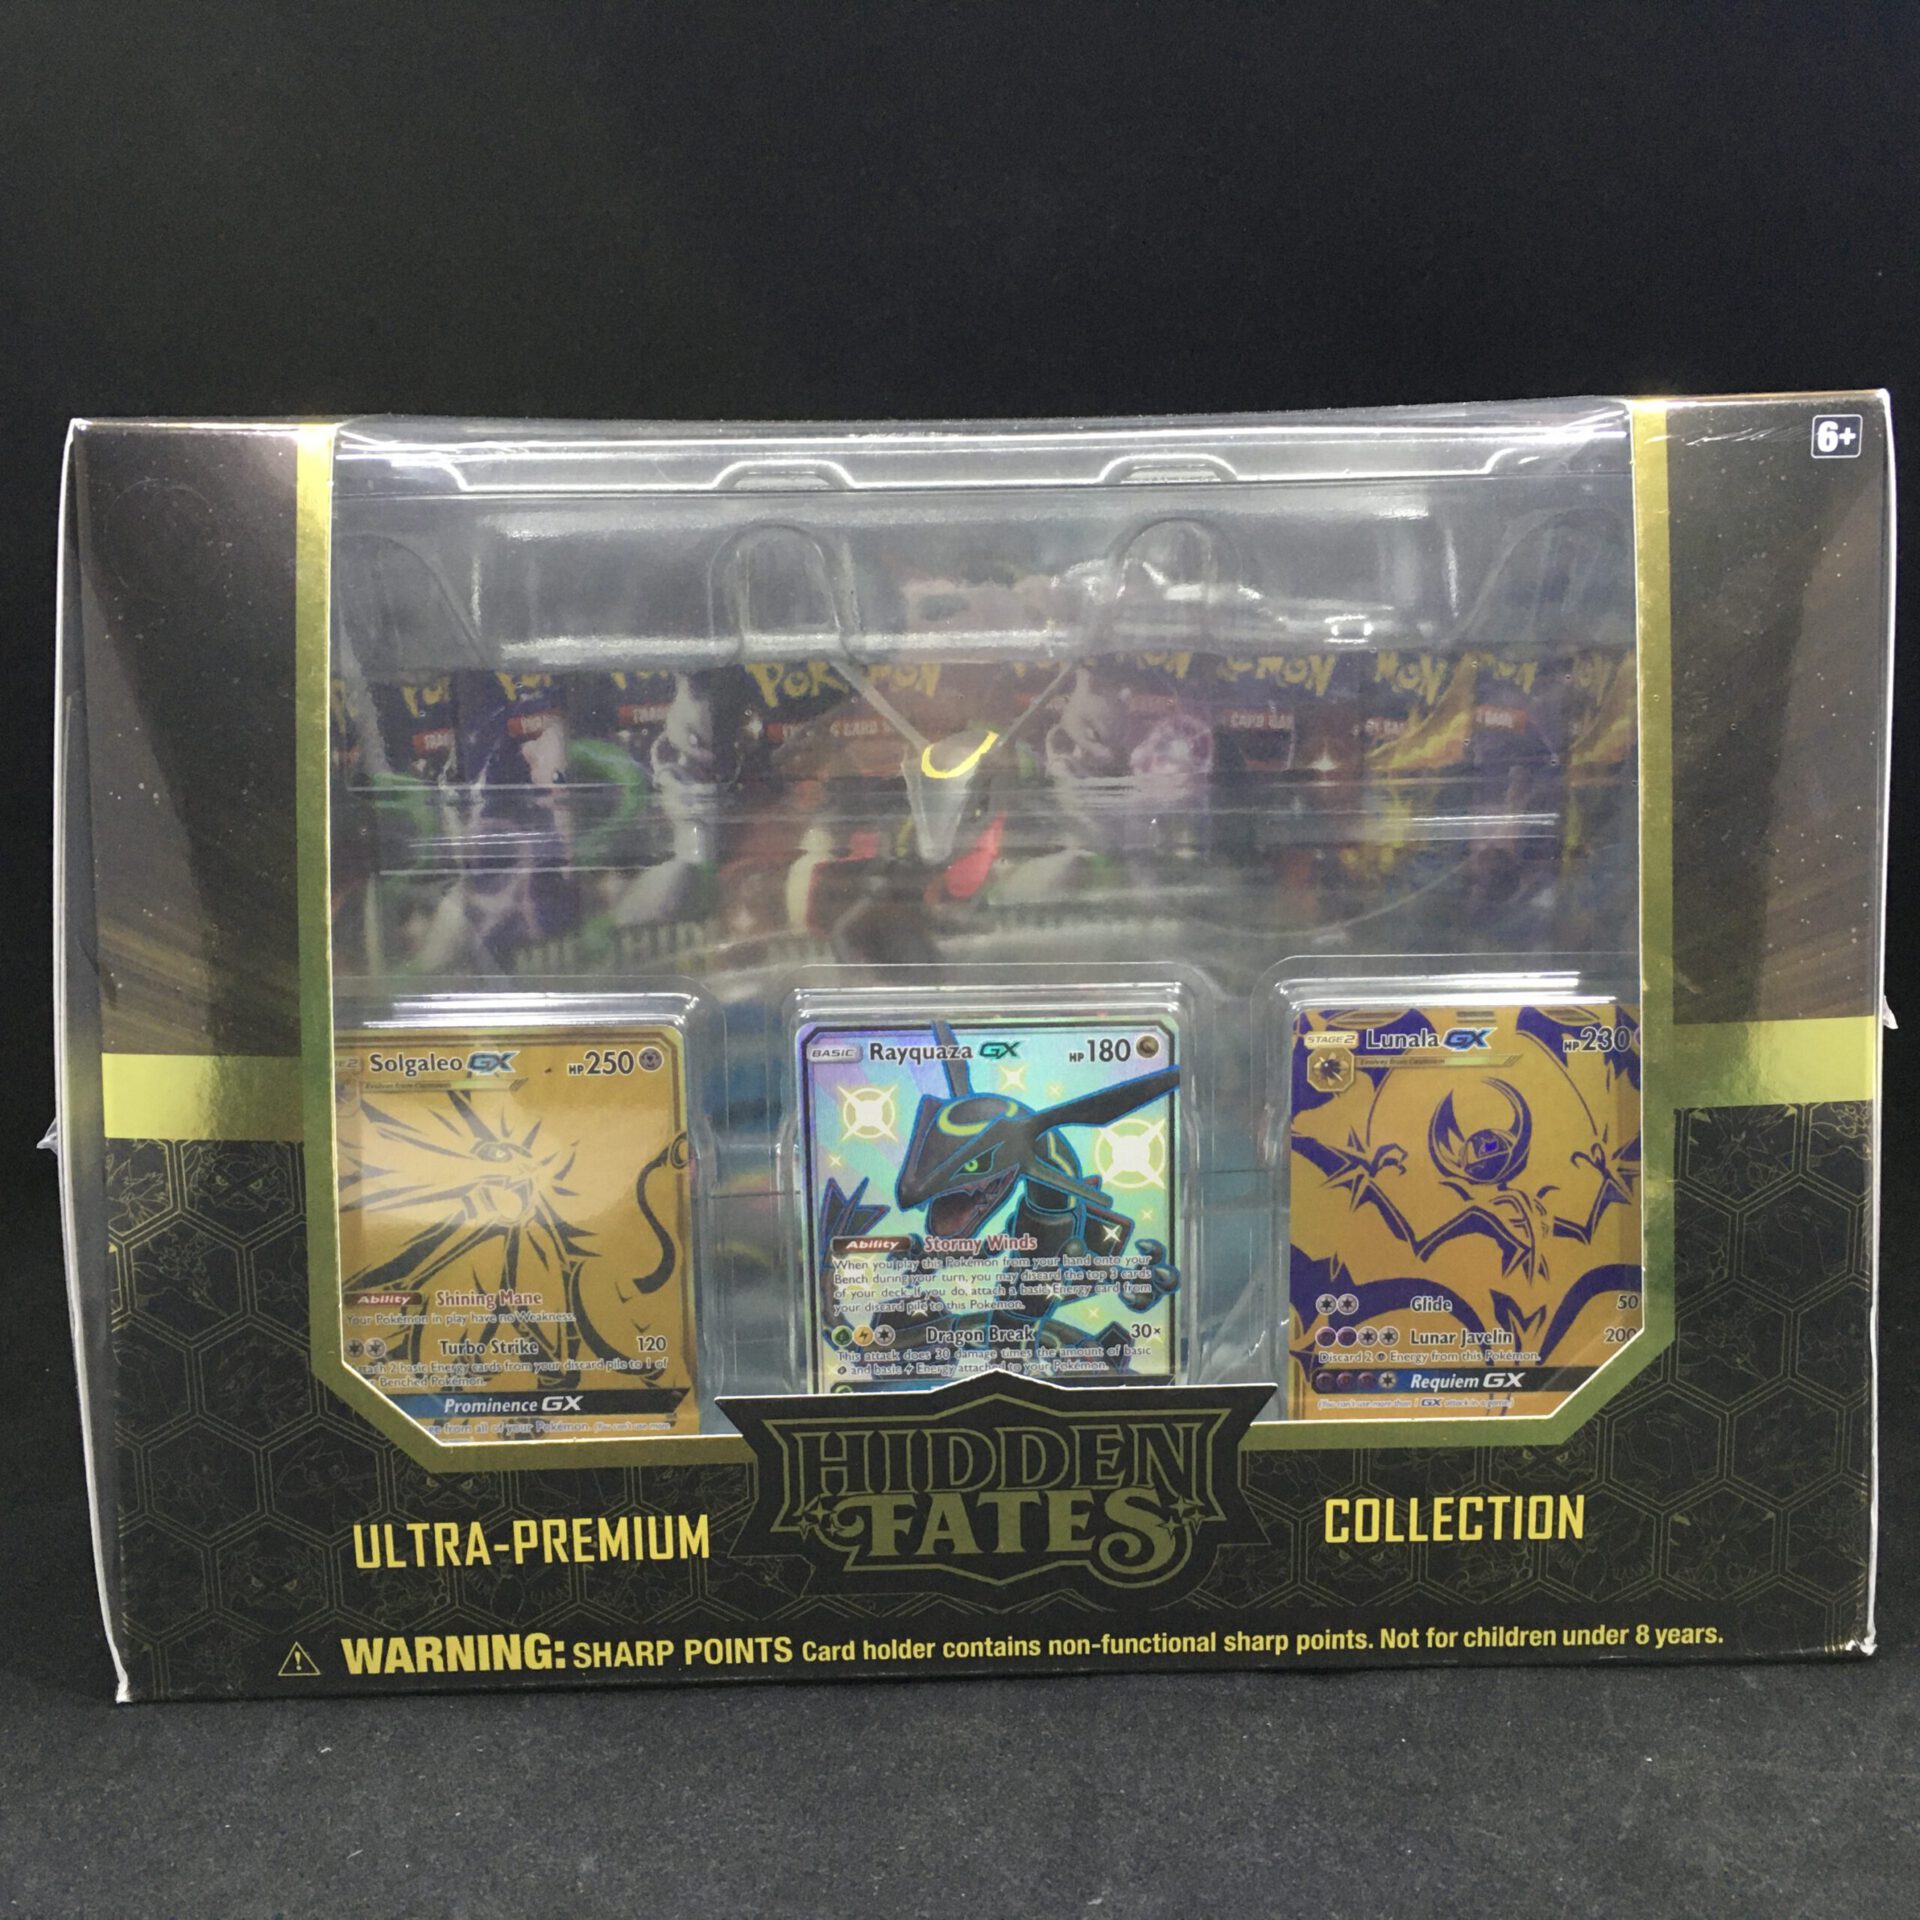 Shiny Rayquaza Figure - Hidden Fates Ultra Premium Collection Box